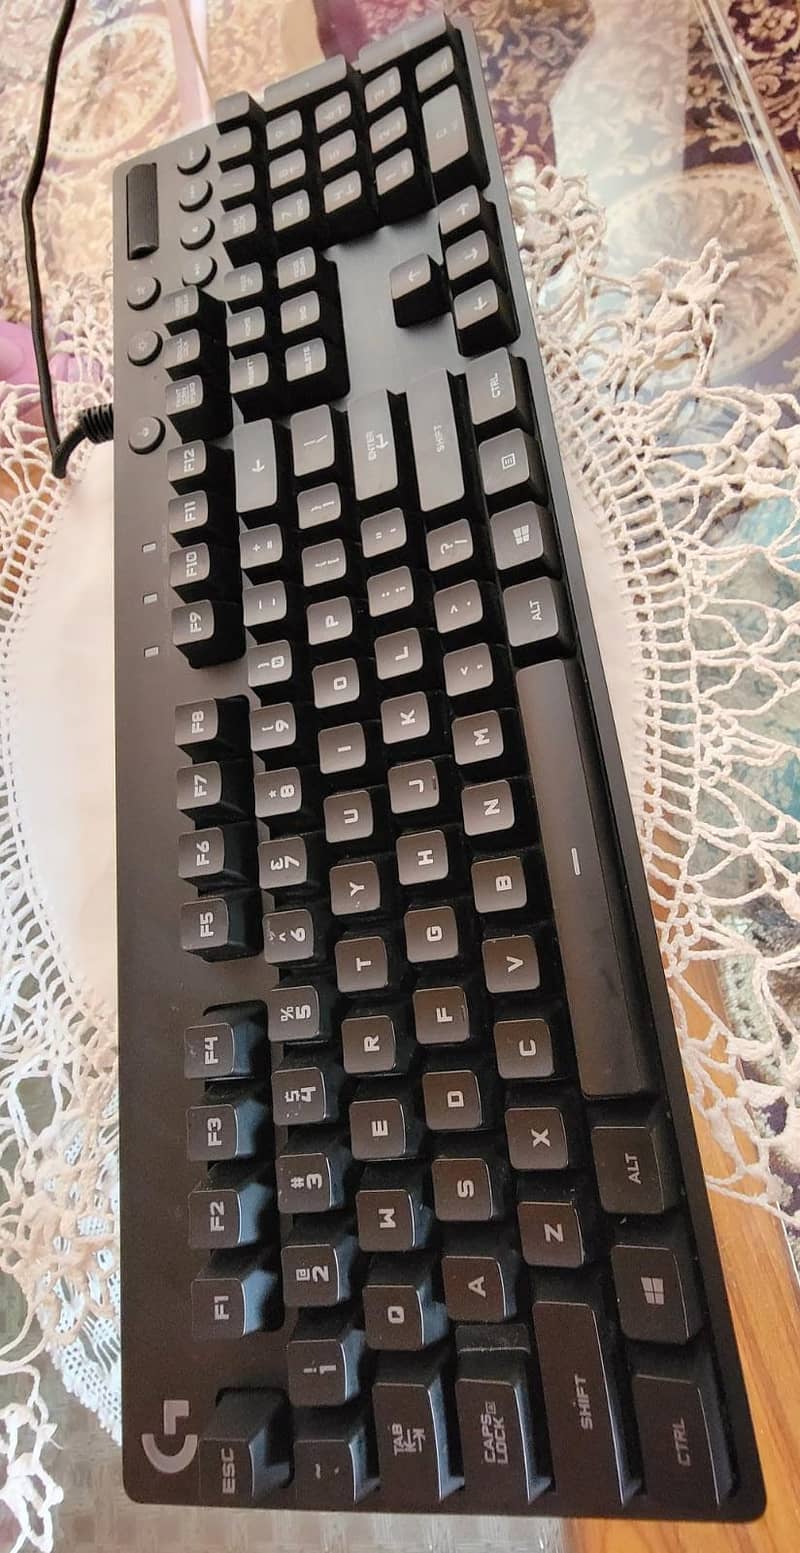 Logitech G810 Orion Spectrum RGB keyboard. 6